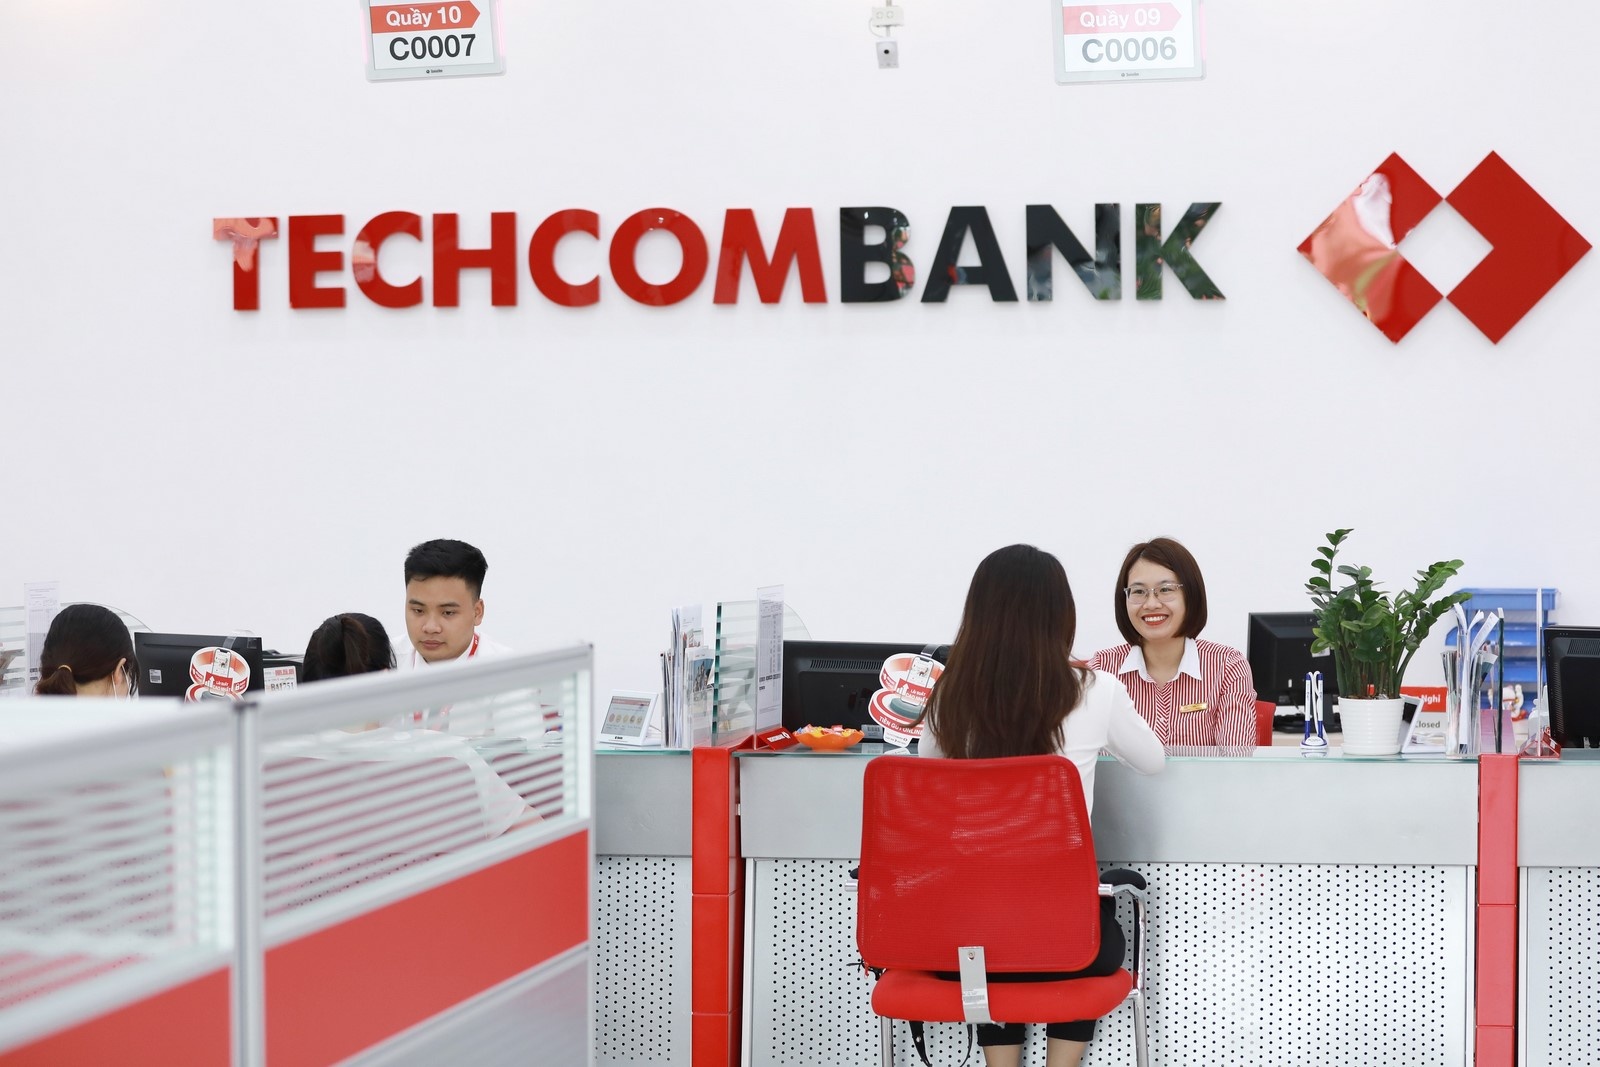 techcombank ket lai qua trinh thuc hien chien luoc 2016 2020 thanh cong